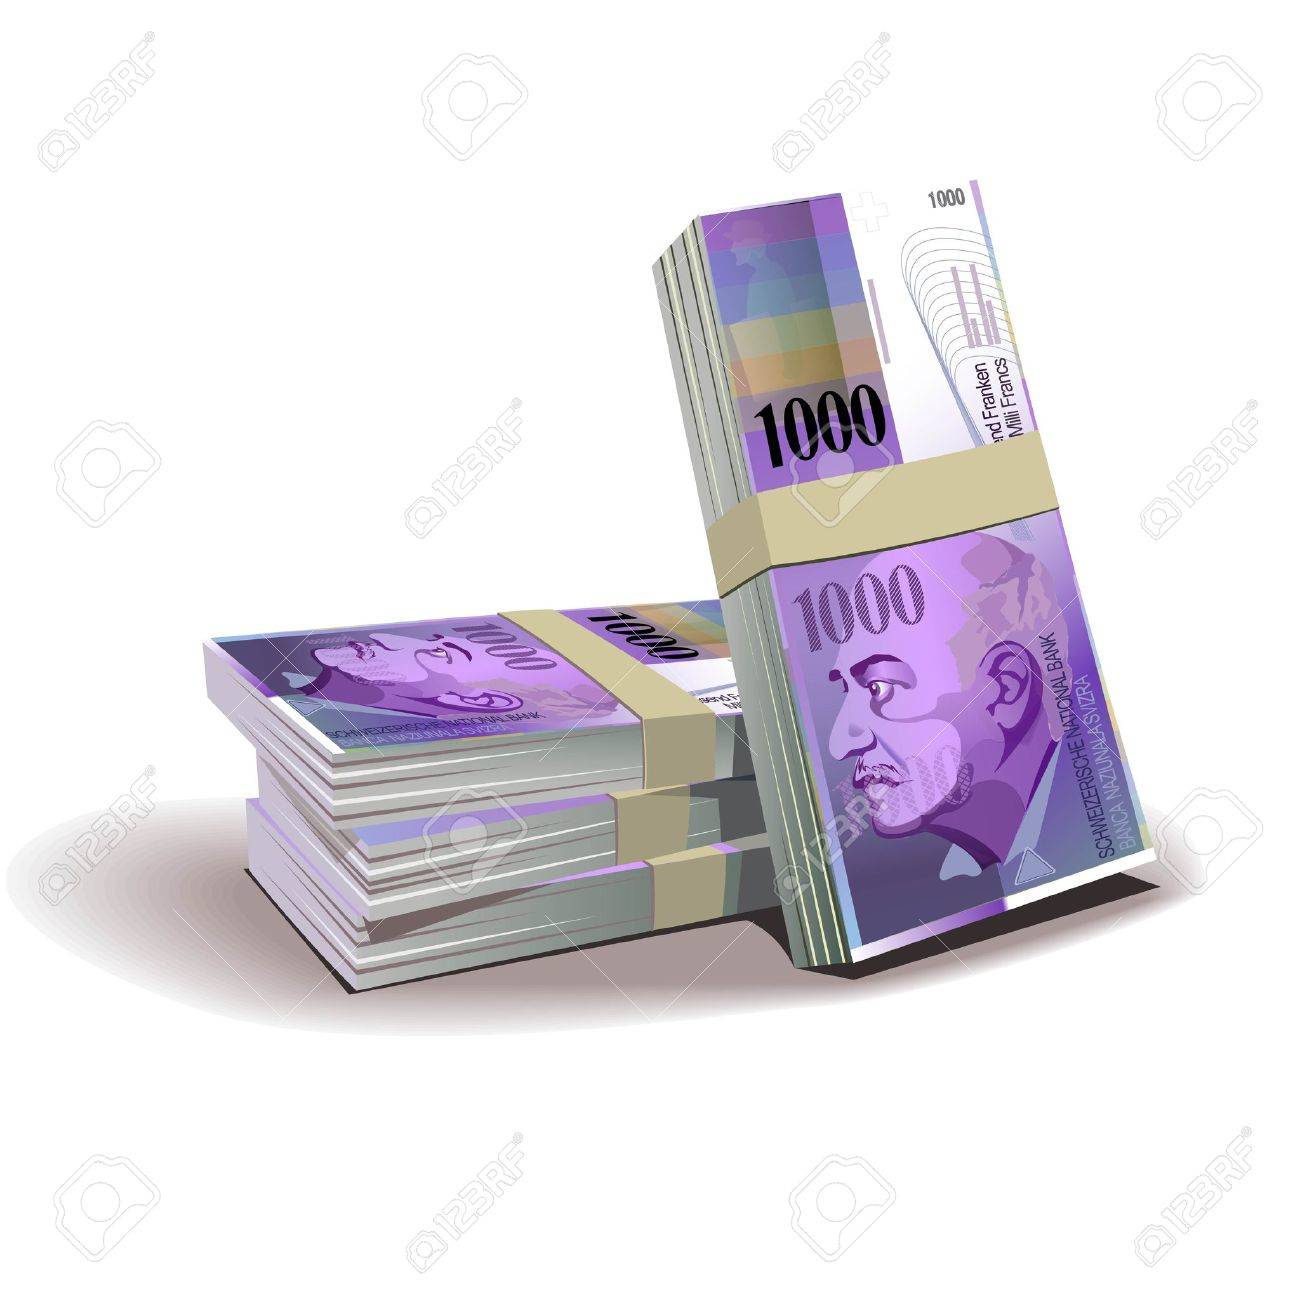 Oferujemy powazne pozyczki gotówkowe od 5.000 do 600.000.000 PLN / GBP